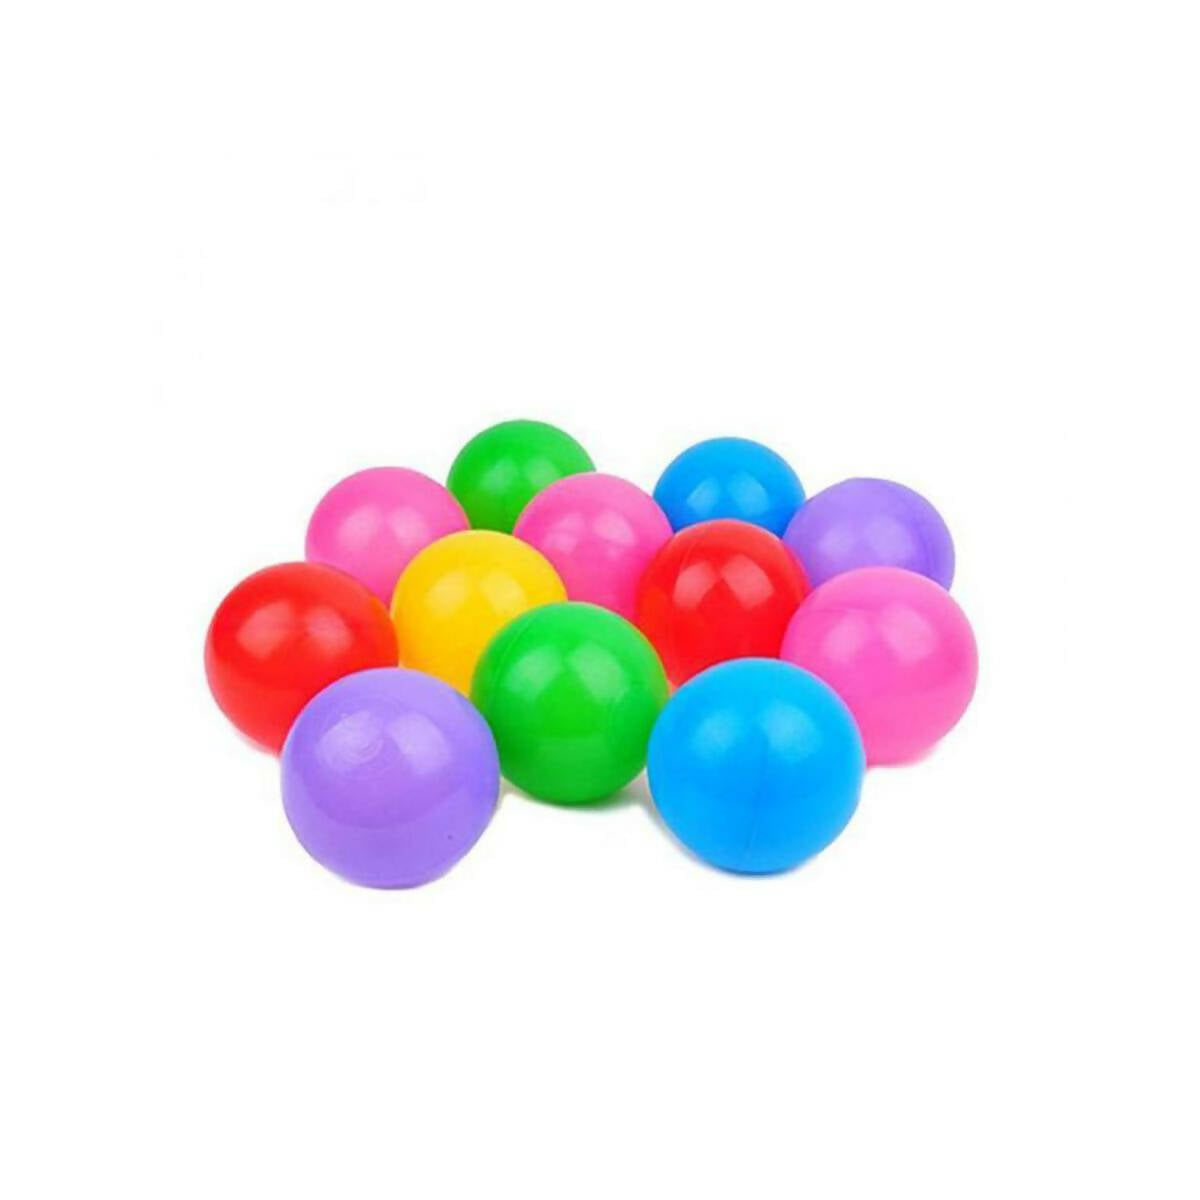 Soft Plastic Tent Balls (12 Pcs)